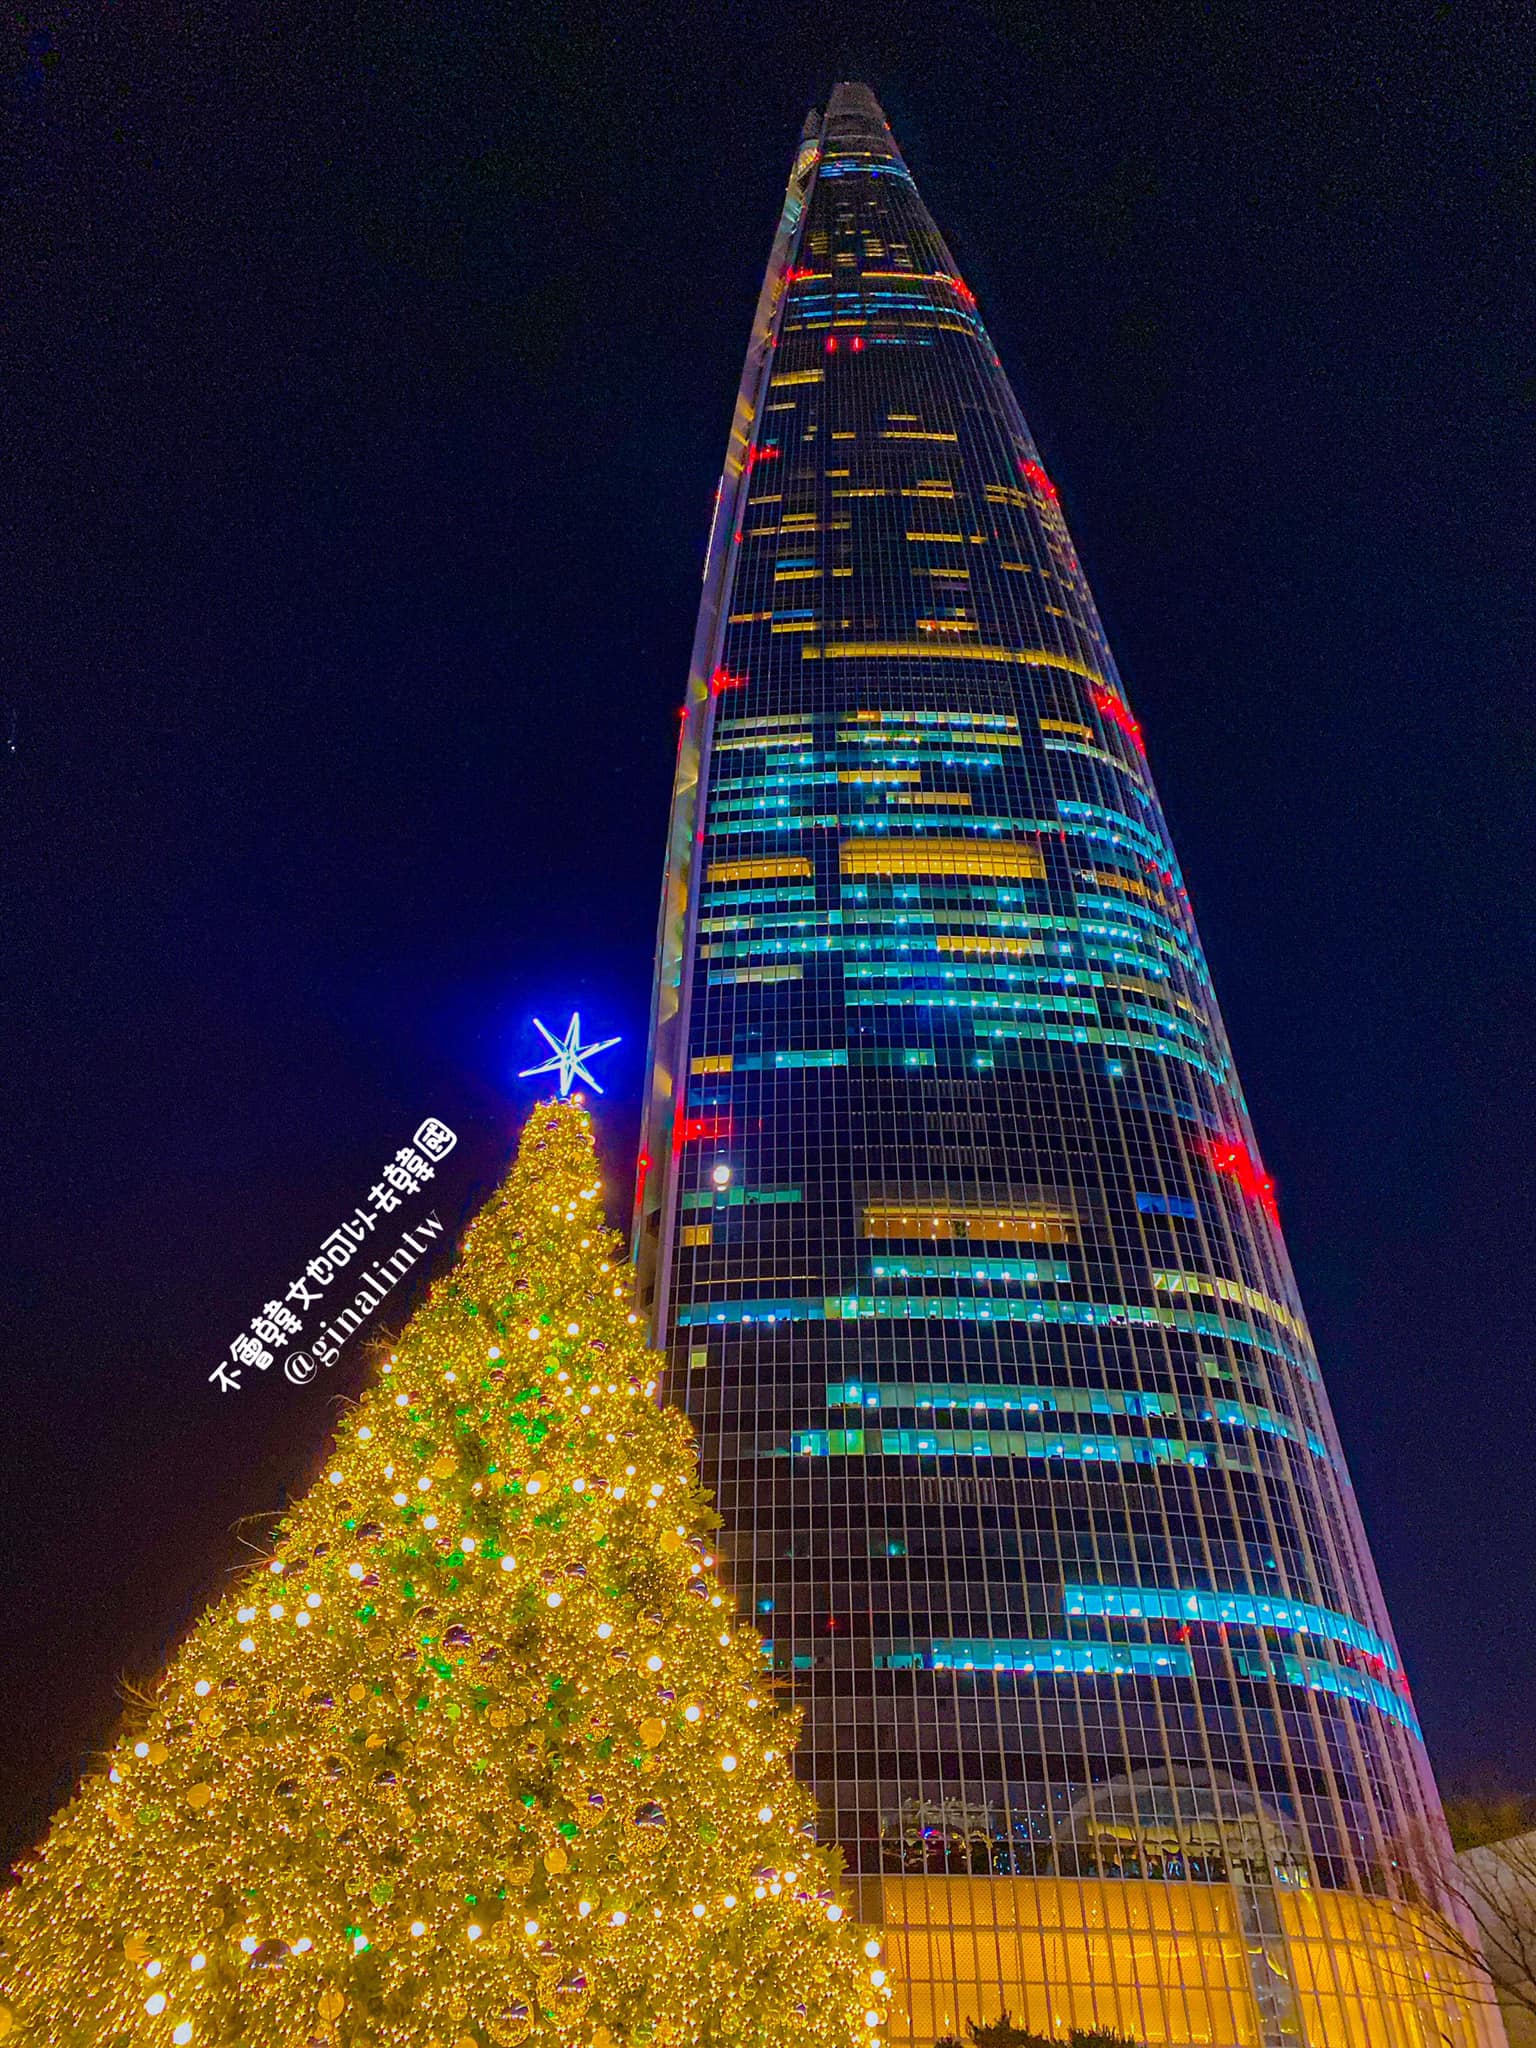 【2022韓國首爾聖誕節】韓國聖誕節去哪裡?盤點首爾聖誕活動百貨、市集活動 @GINA環球旅行生活